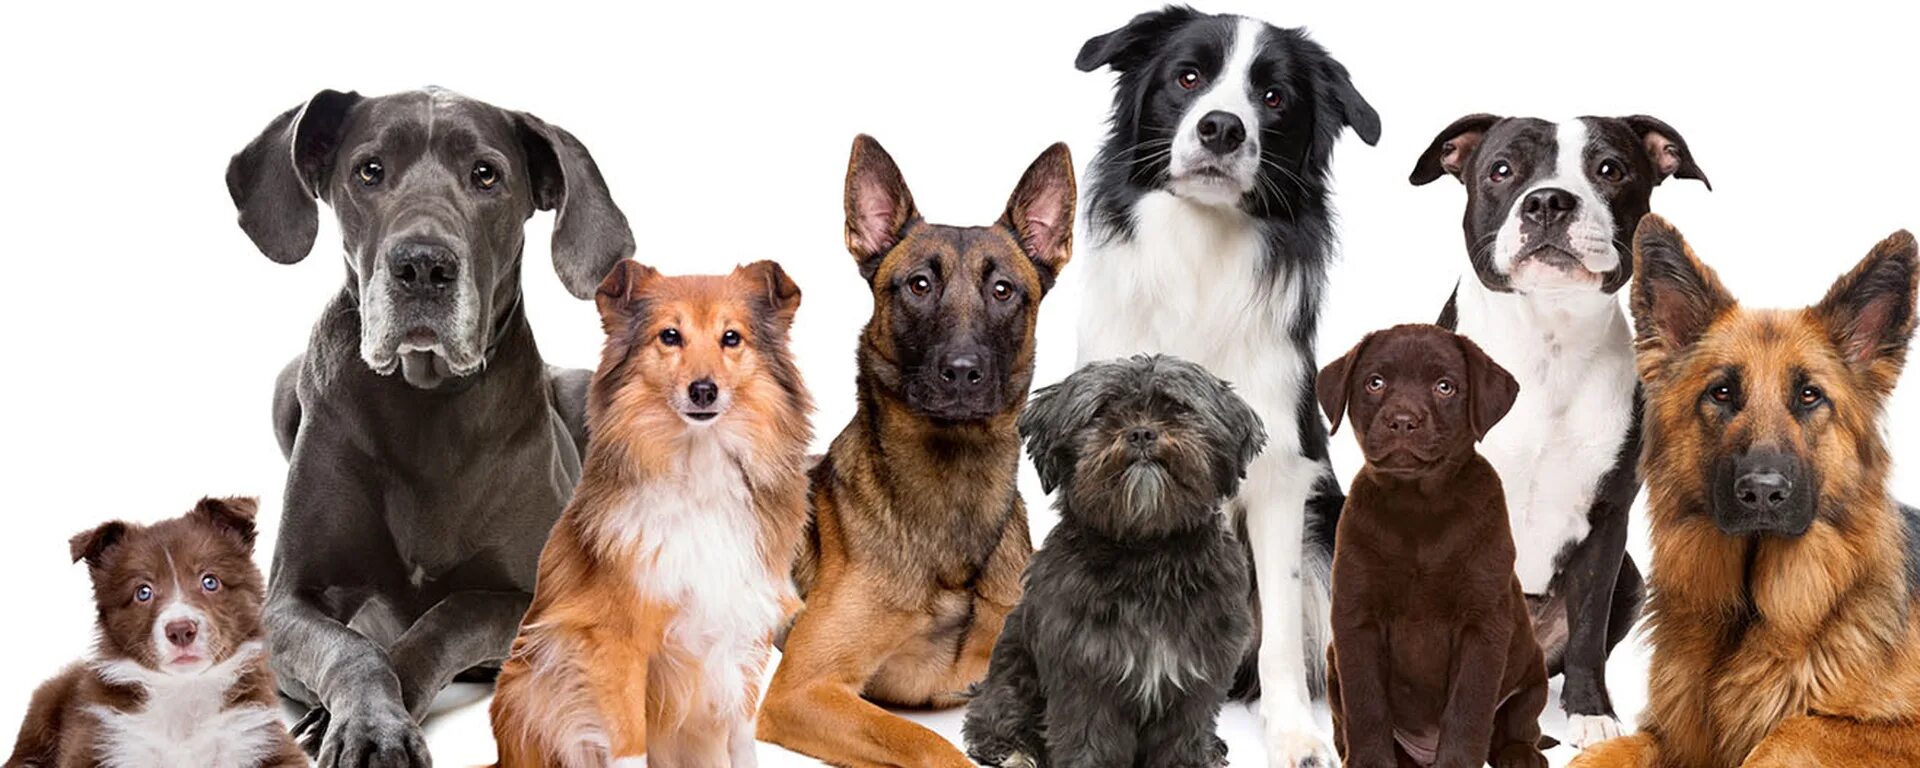 9 группа собак. Разные собаки. Много собак. Собаки разных пород на белом фоне. Собаки в ряд.